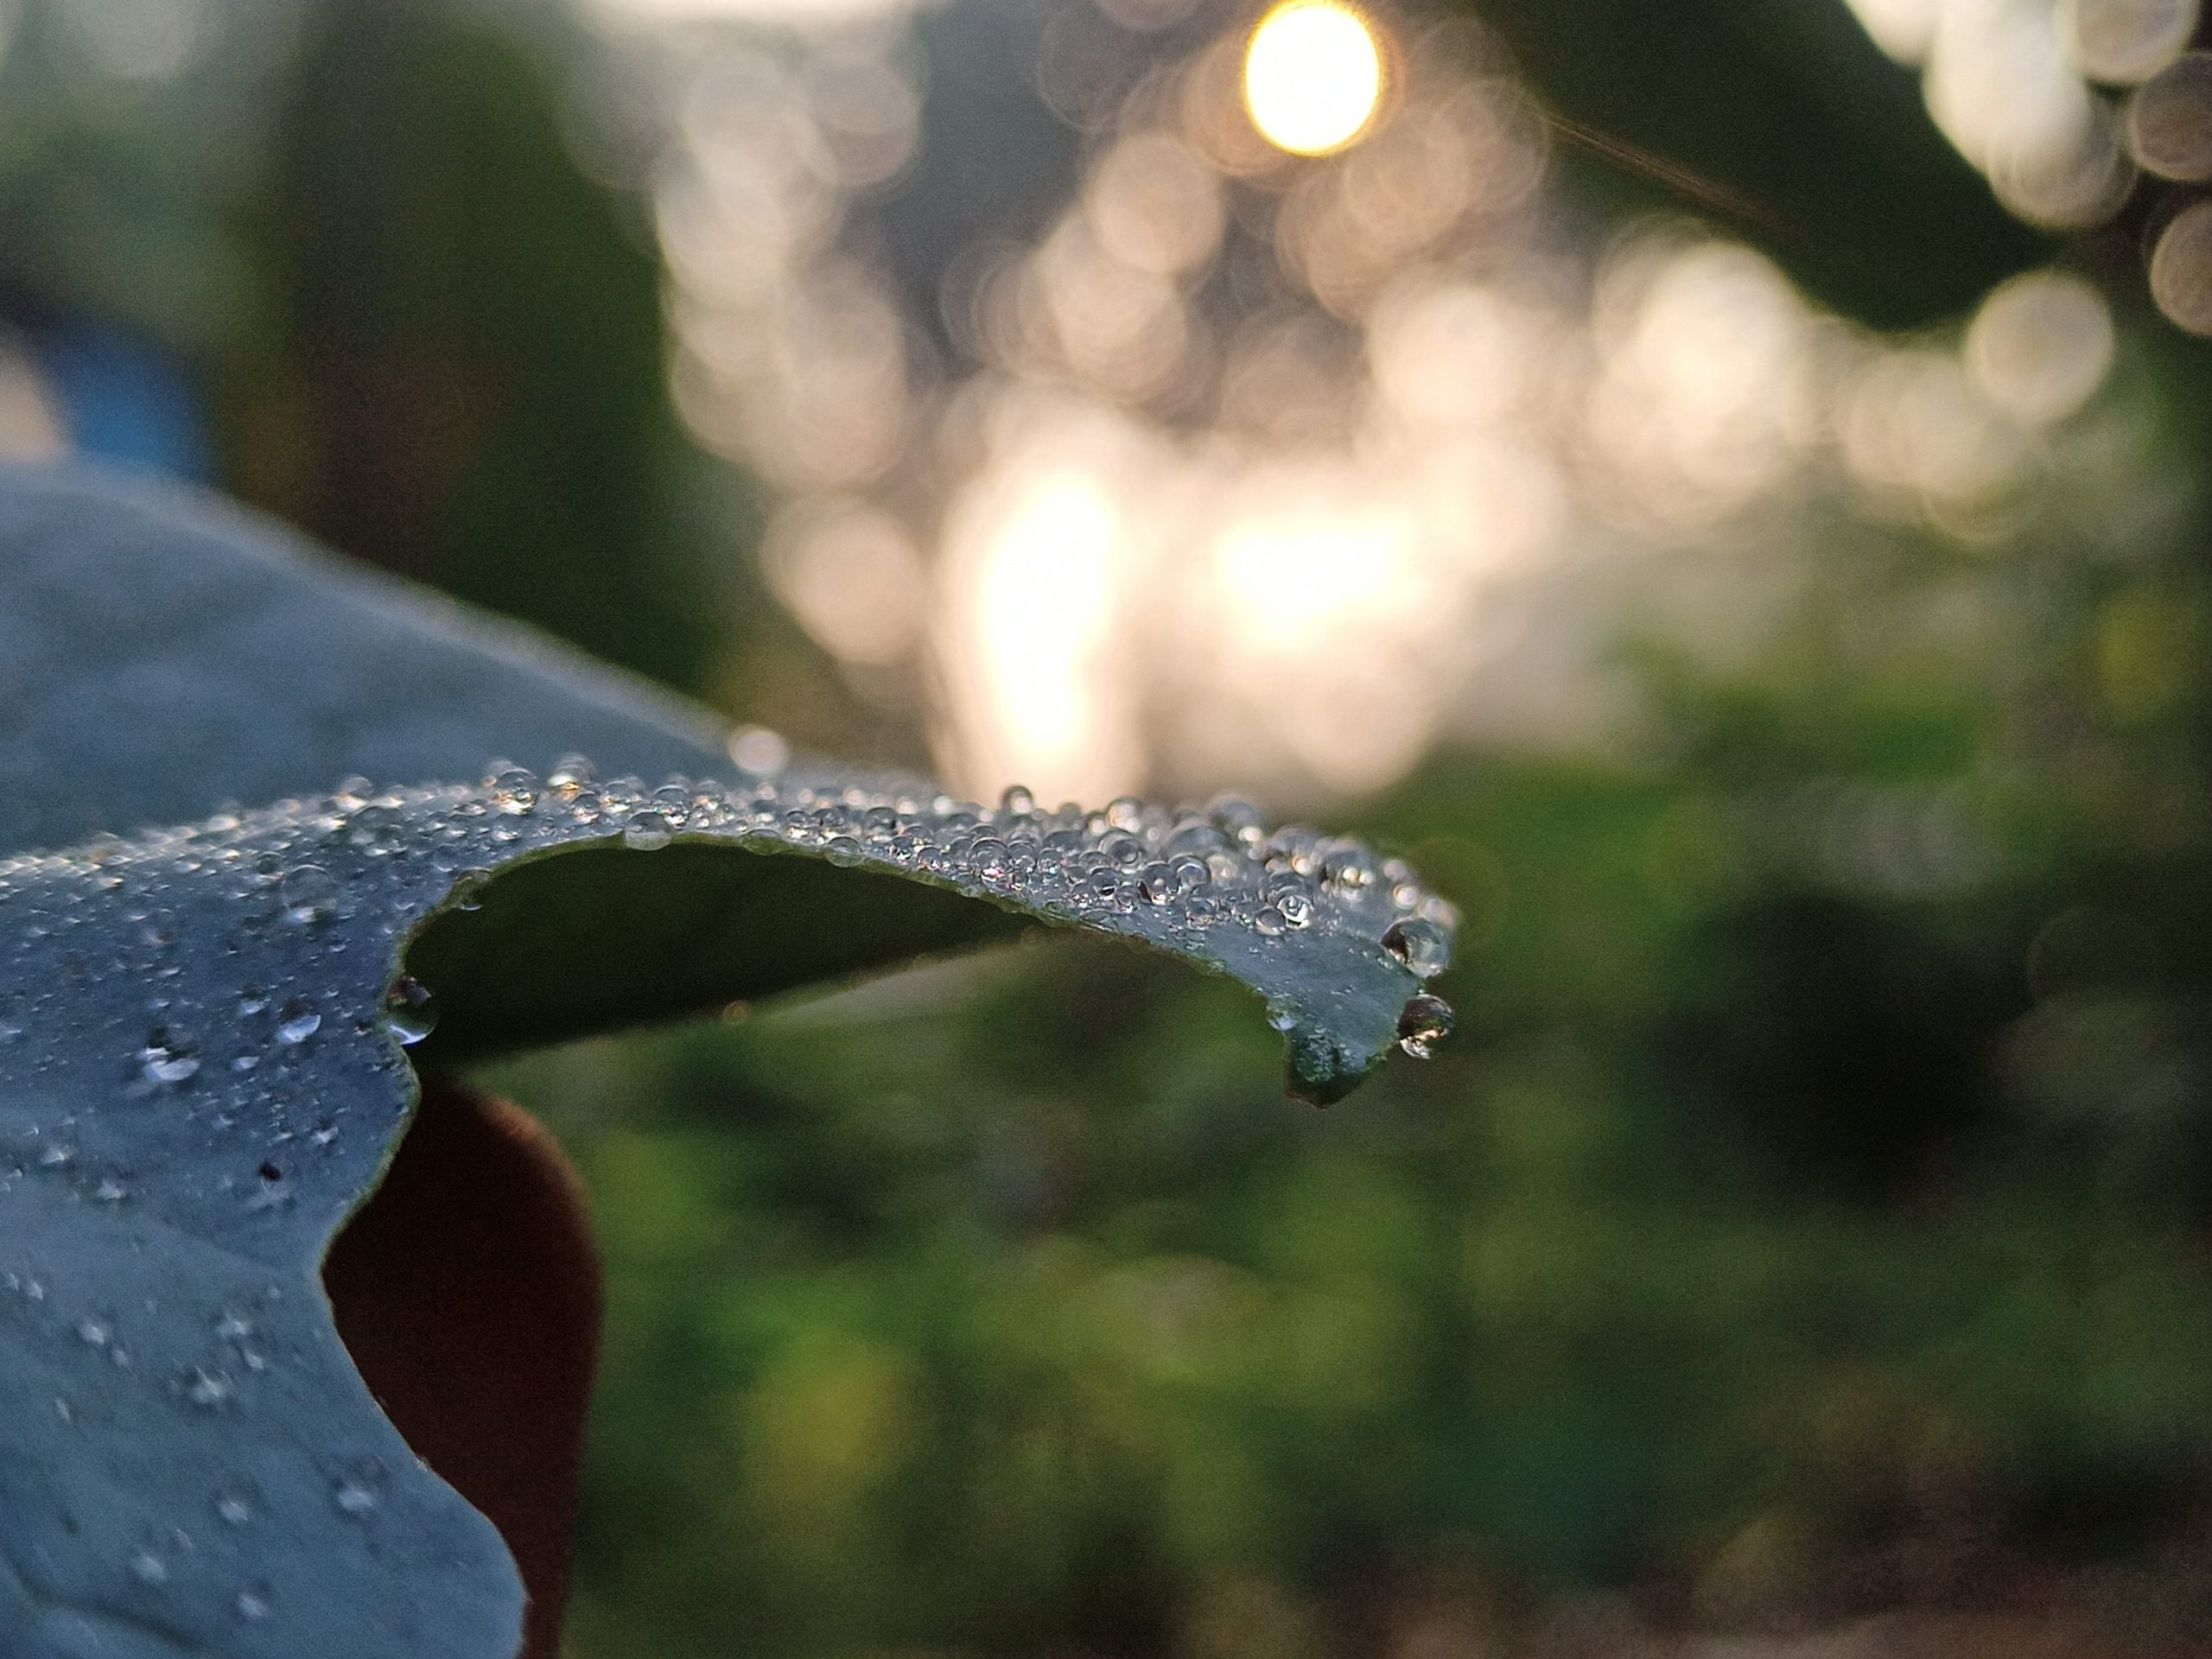 dew drops on a leaf